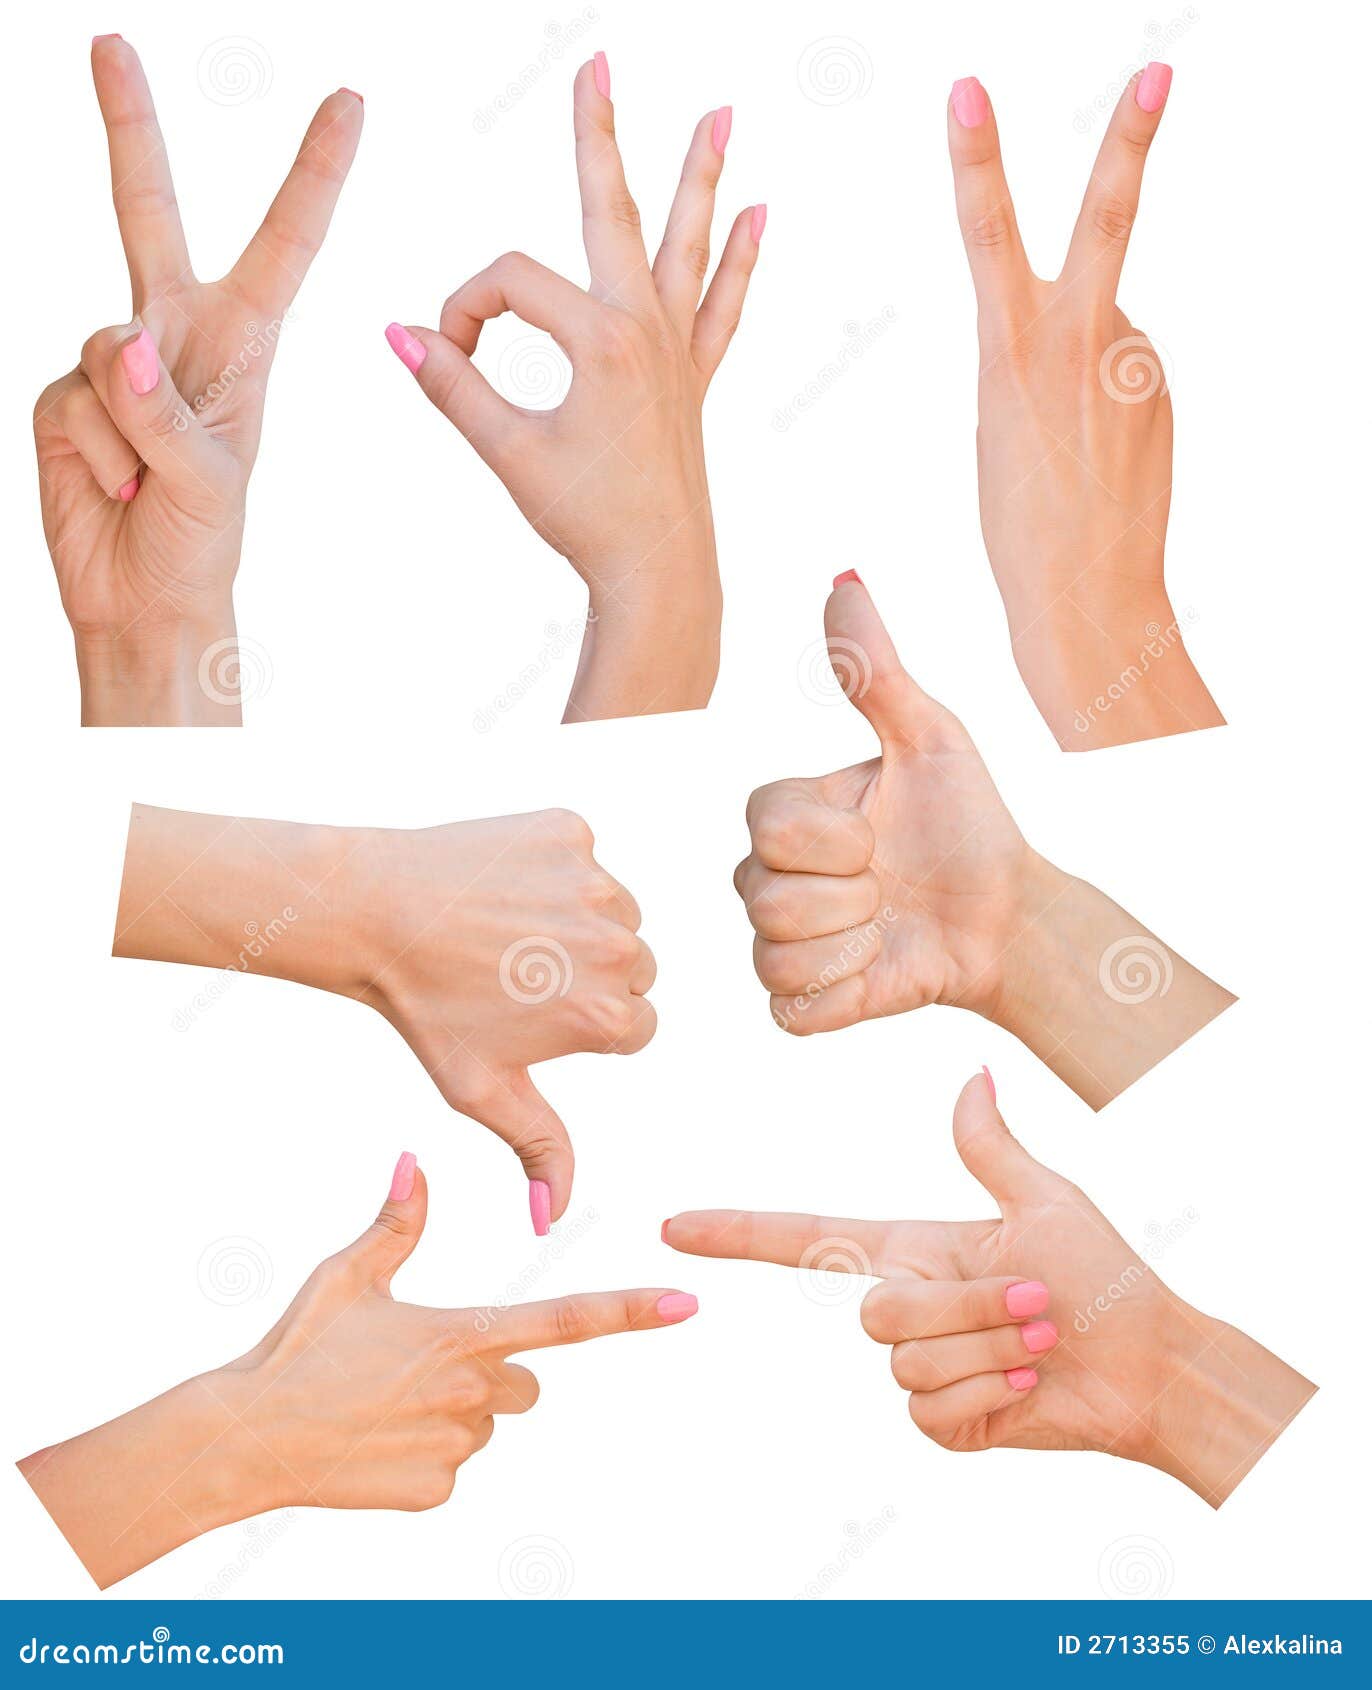 gestures of hands